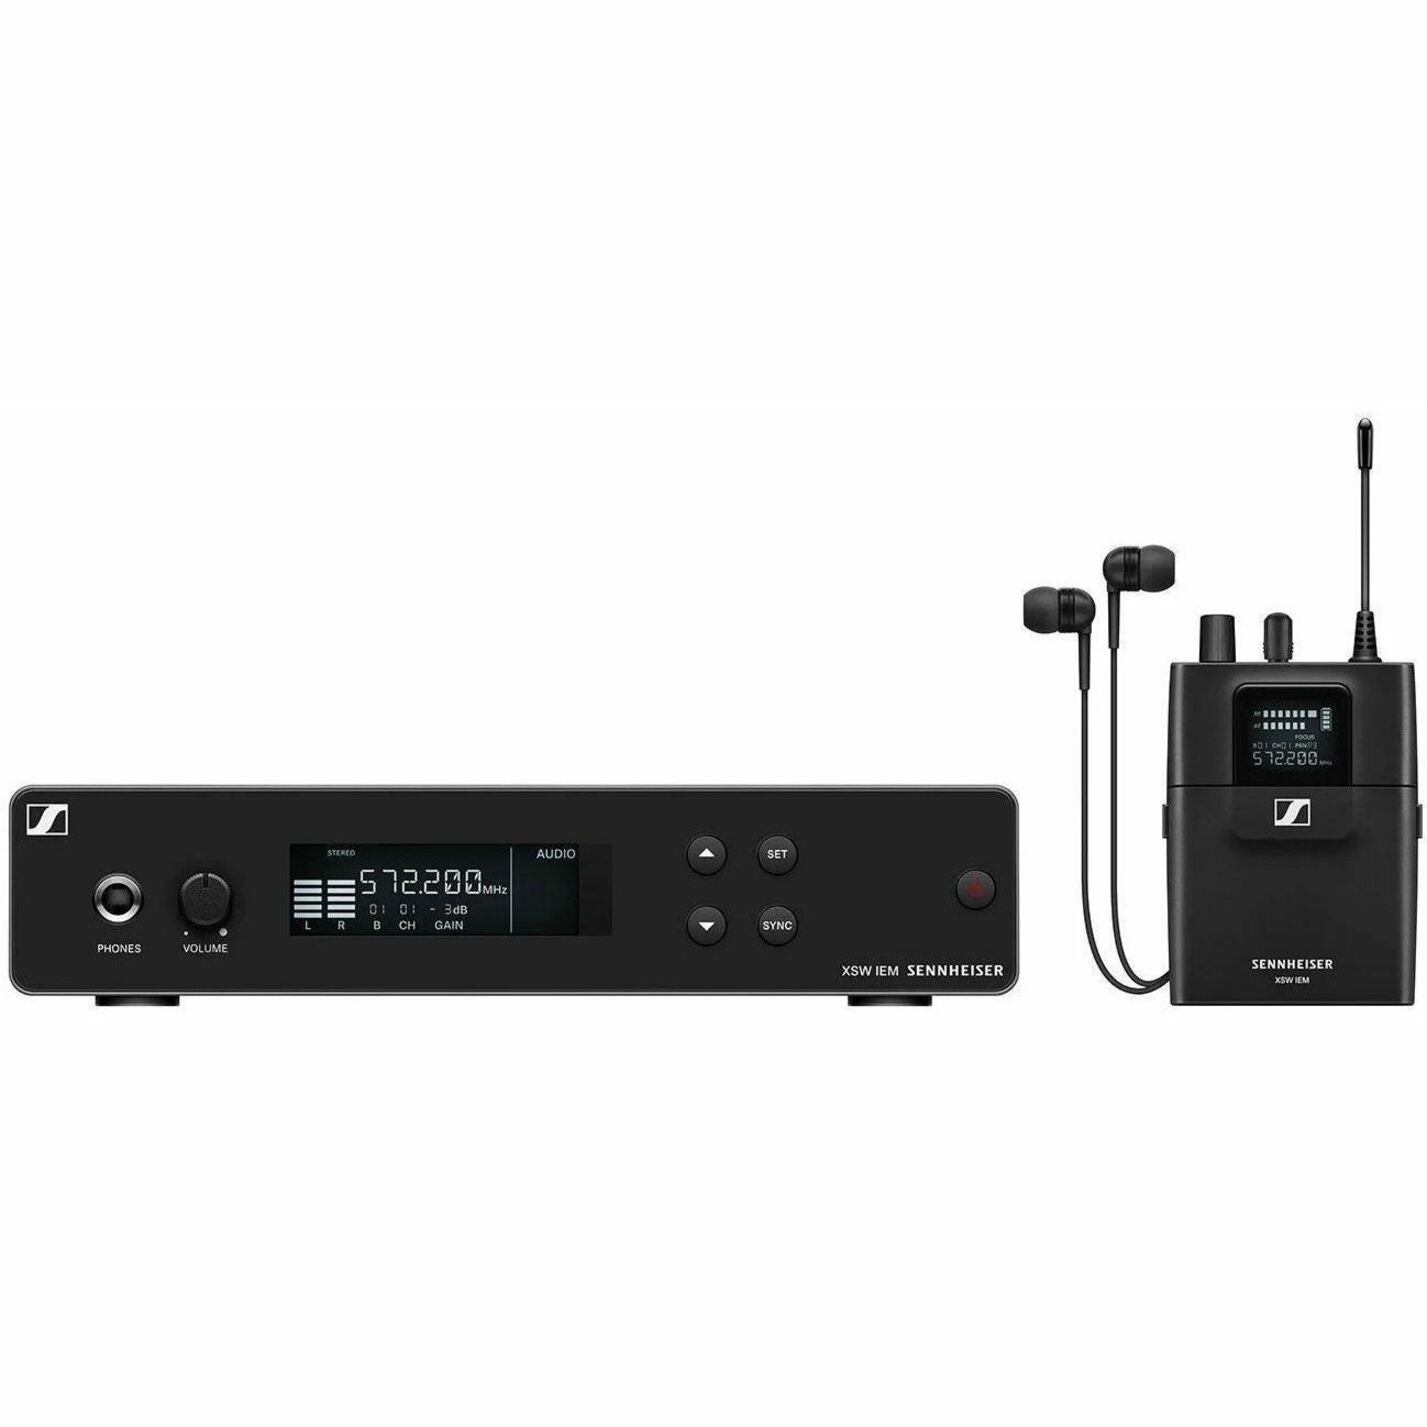 Sennheiser 509146 Wireless Microphone System, XSW IEM EK Stereo Receiver, XSW IEM SR Stereo Transmitter, IE 4 In-ear Headphones